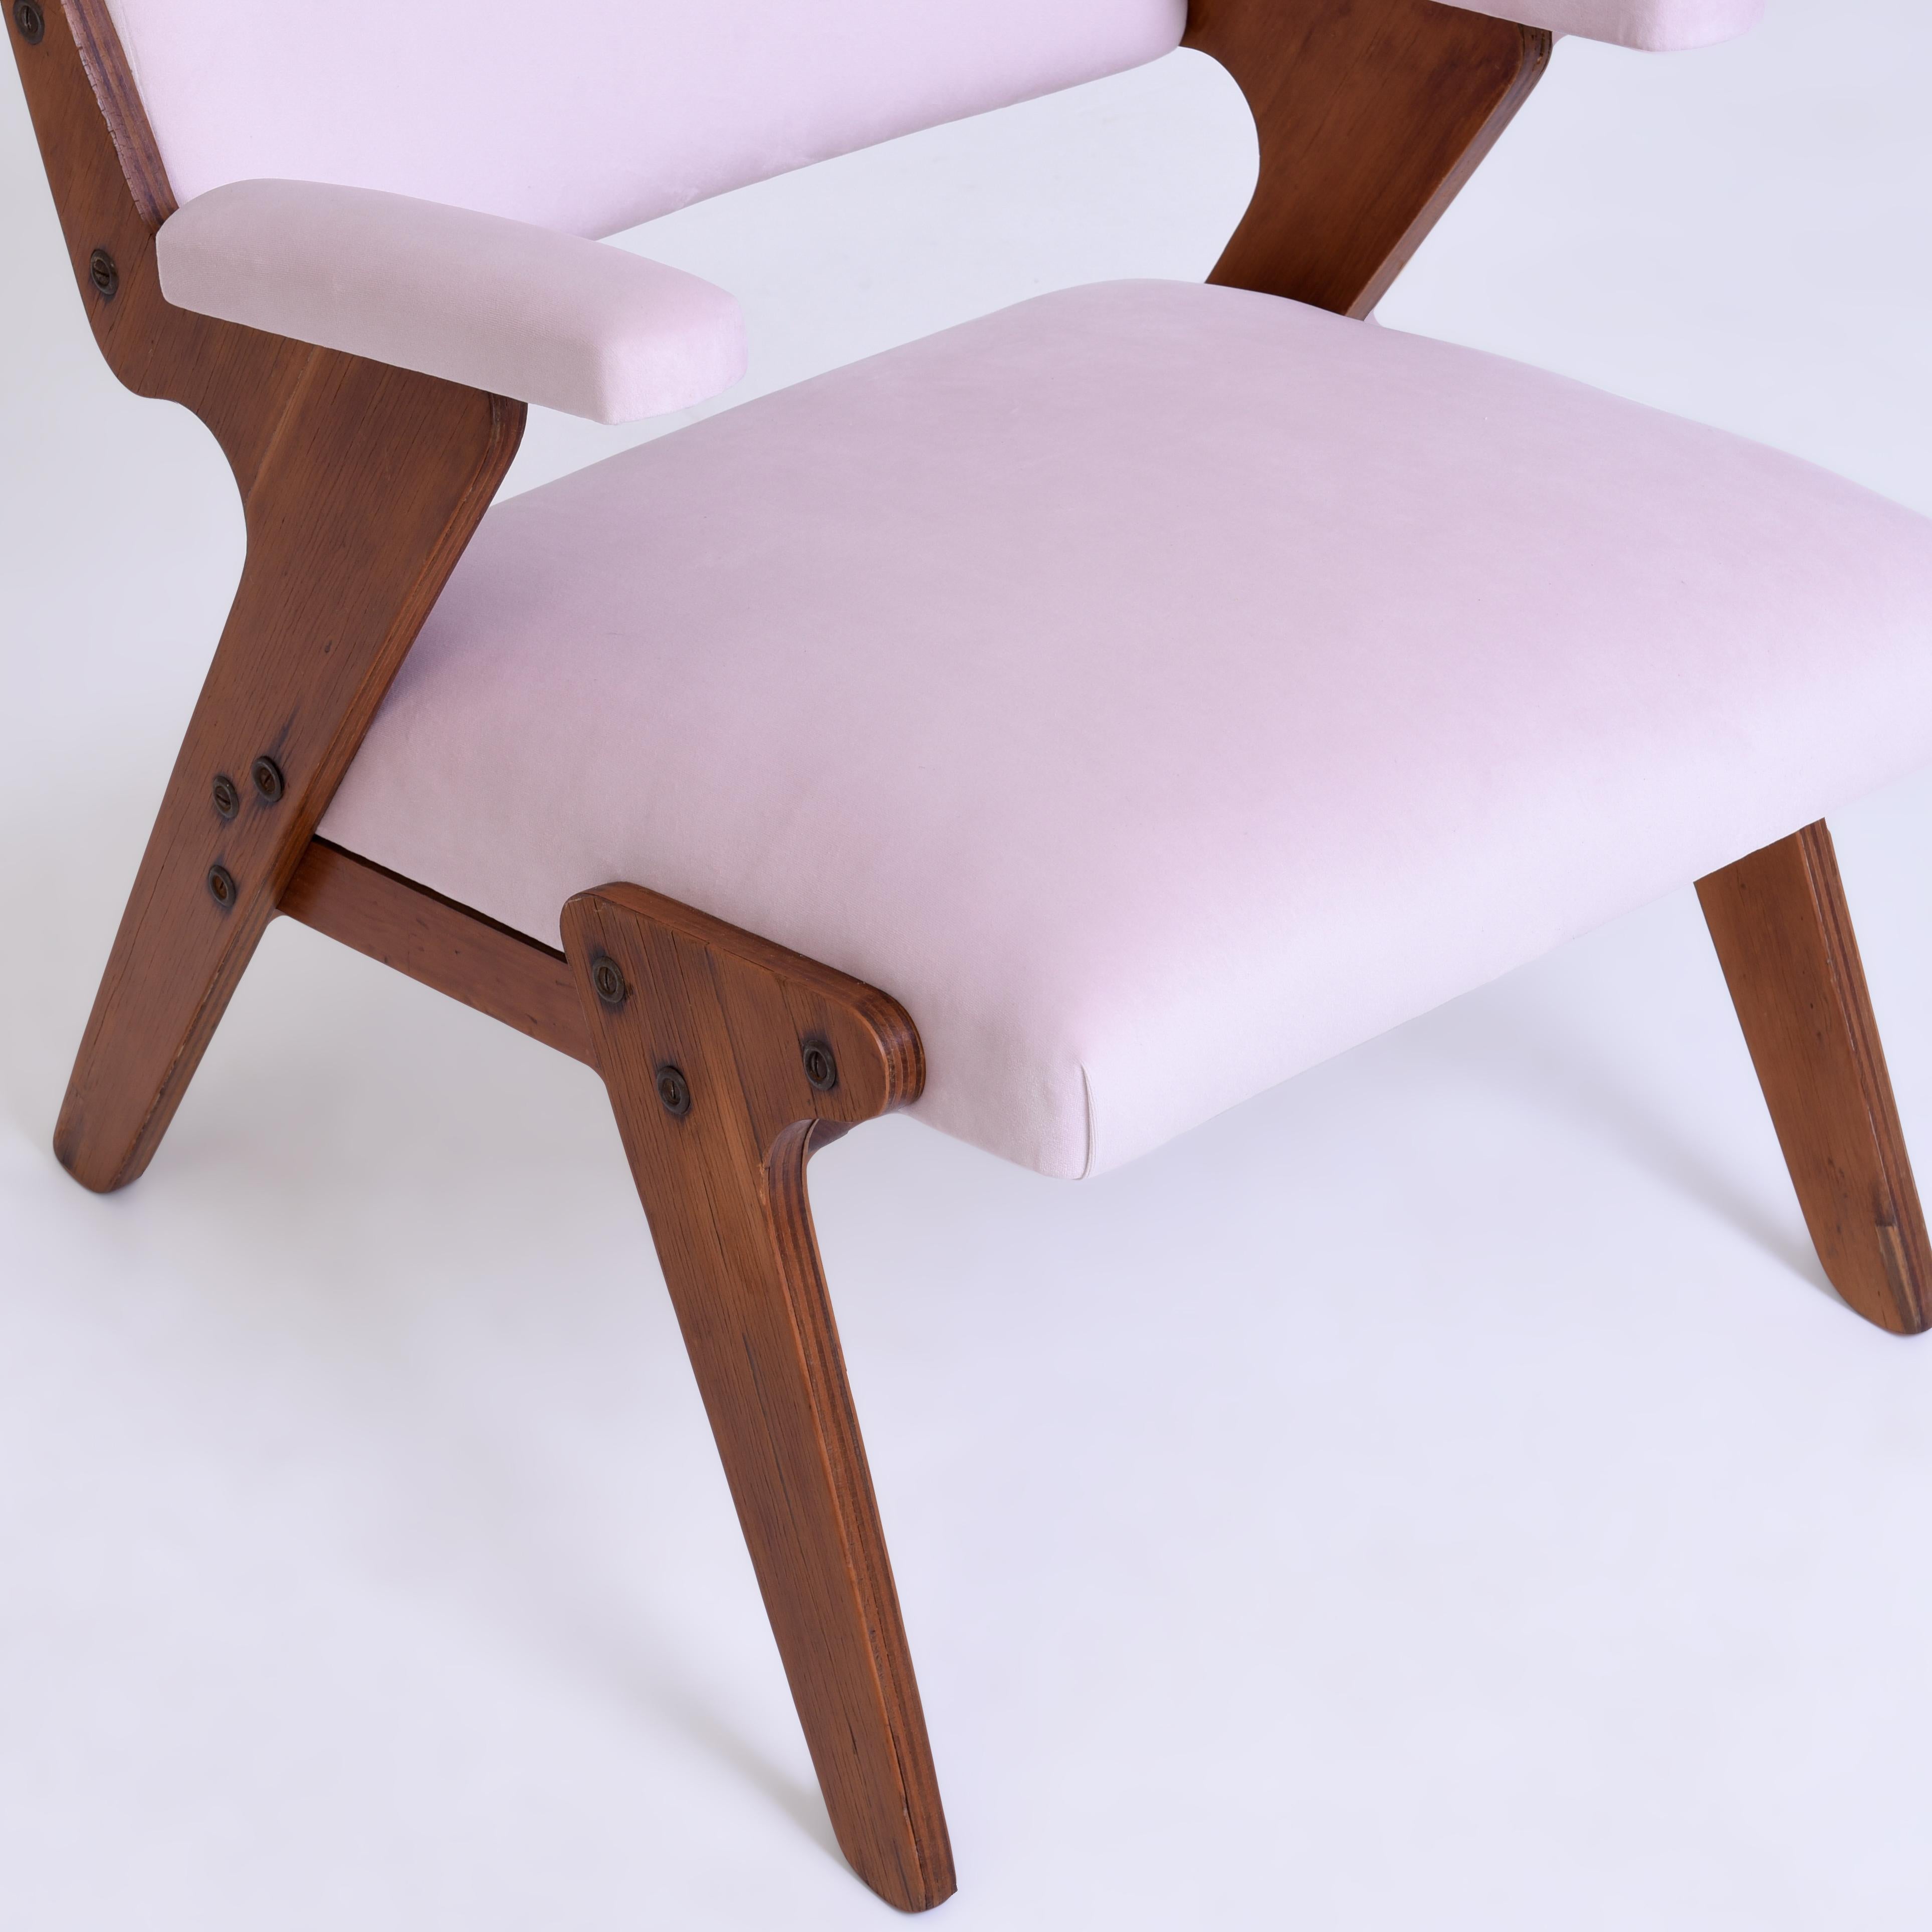 José Zanine Caldas midcentury armchair, Brazil, 1950s
Plywood, velvet.